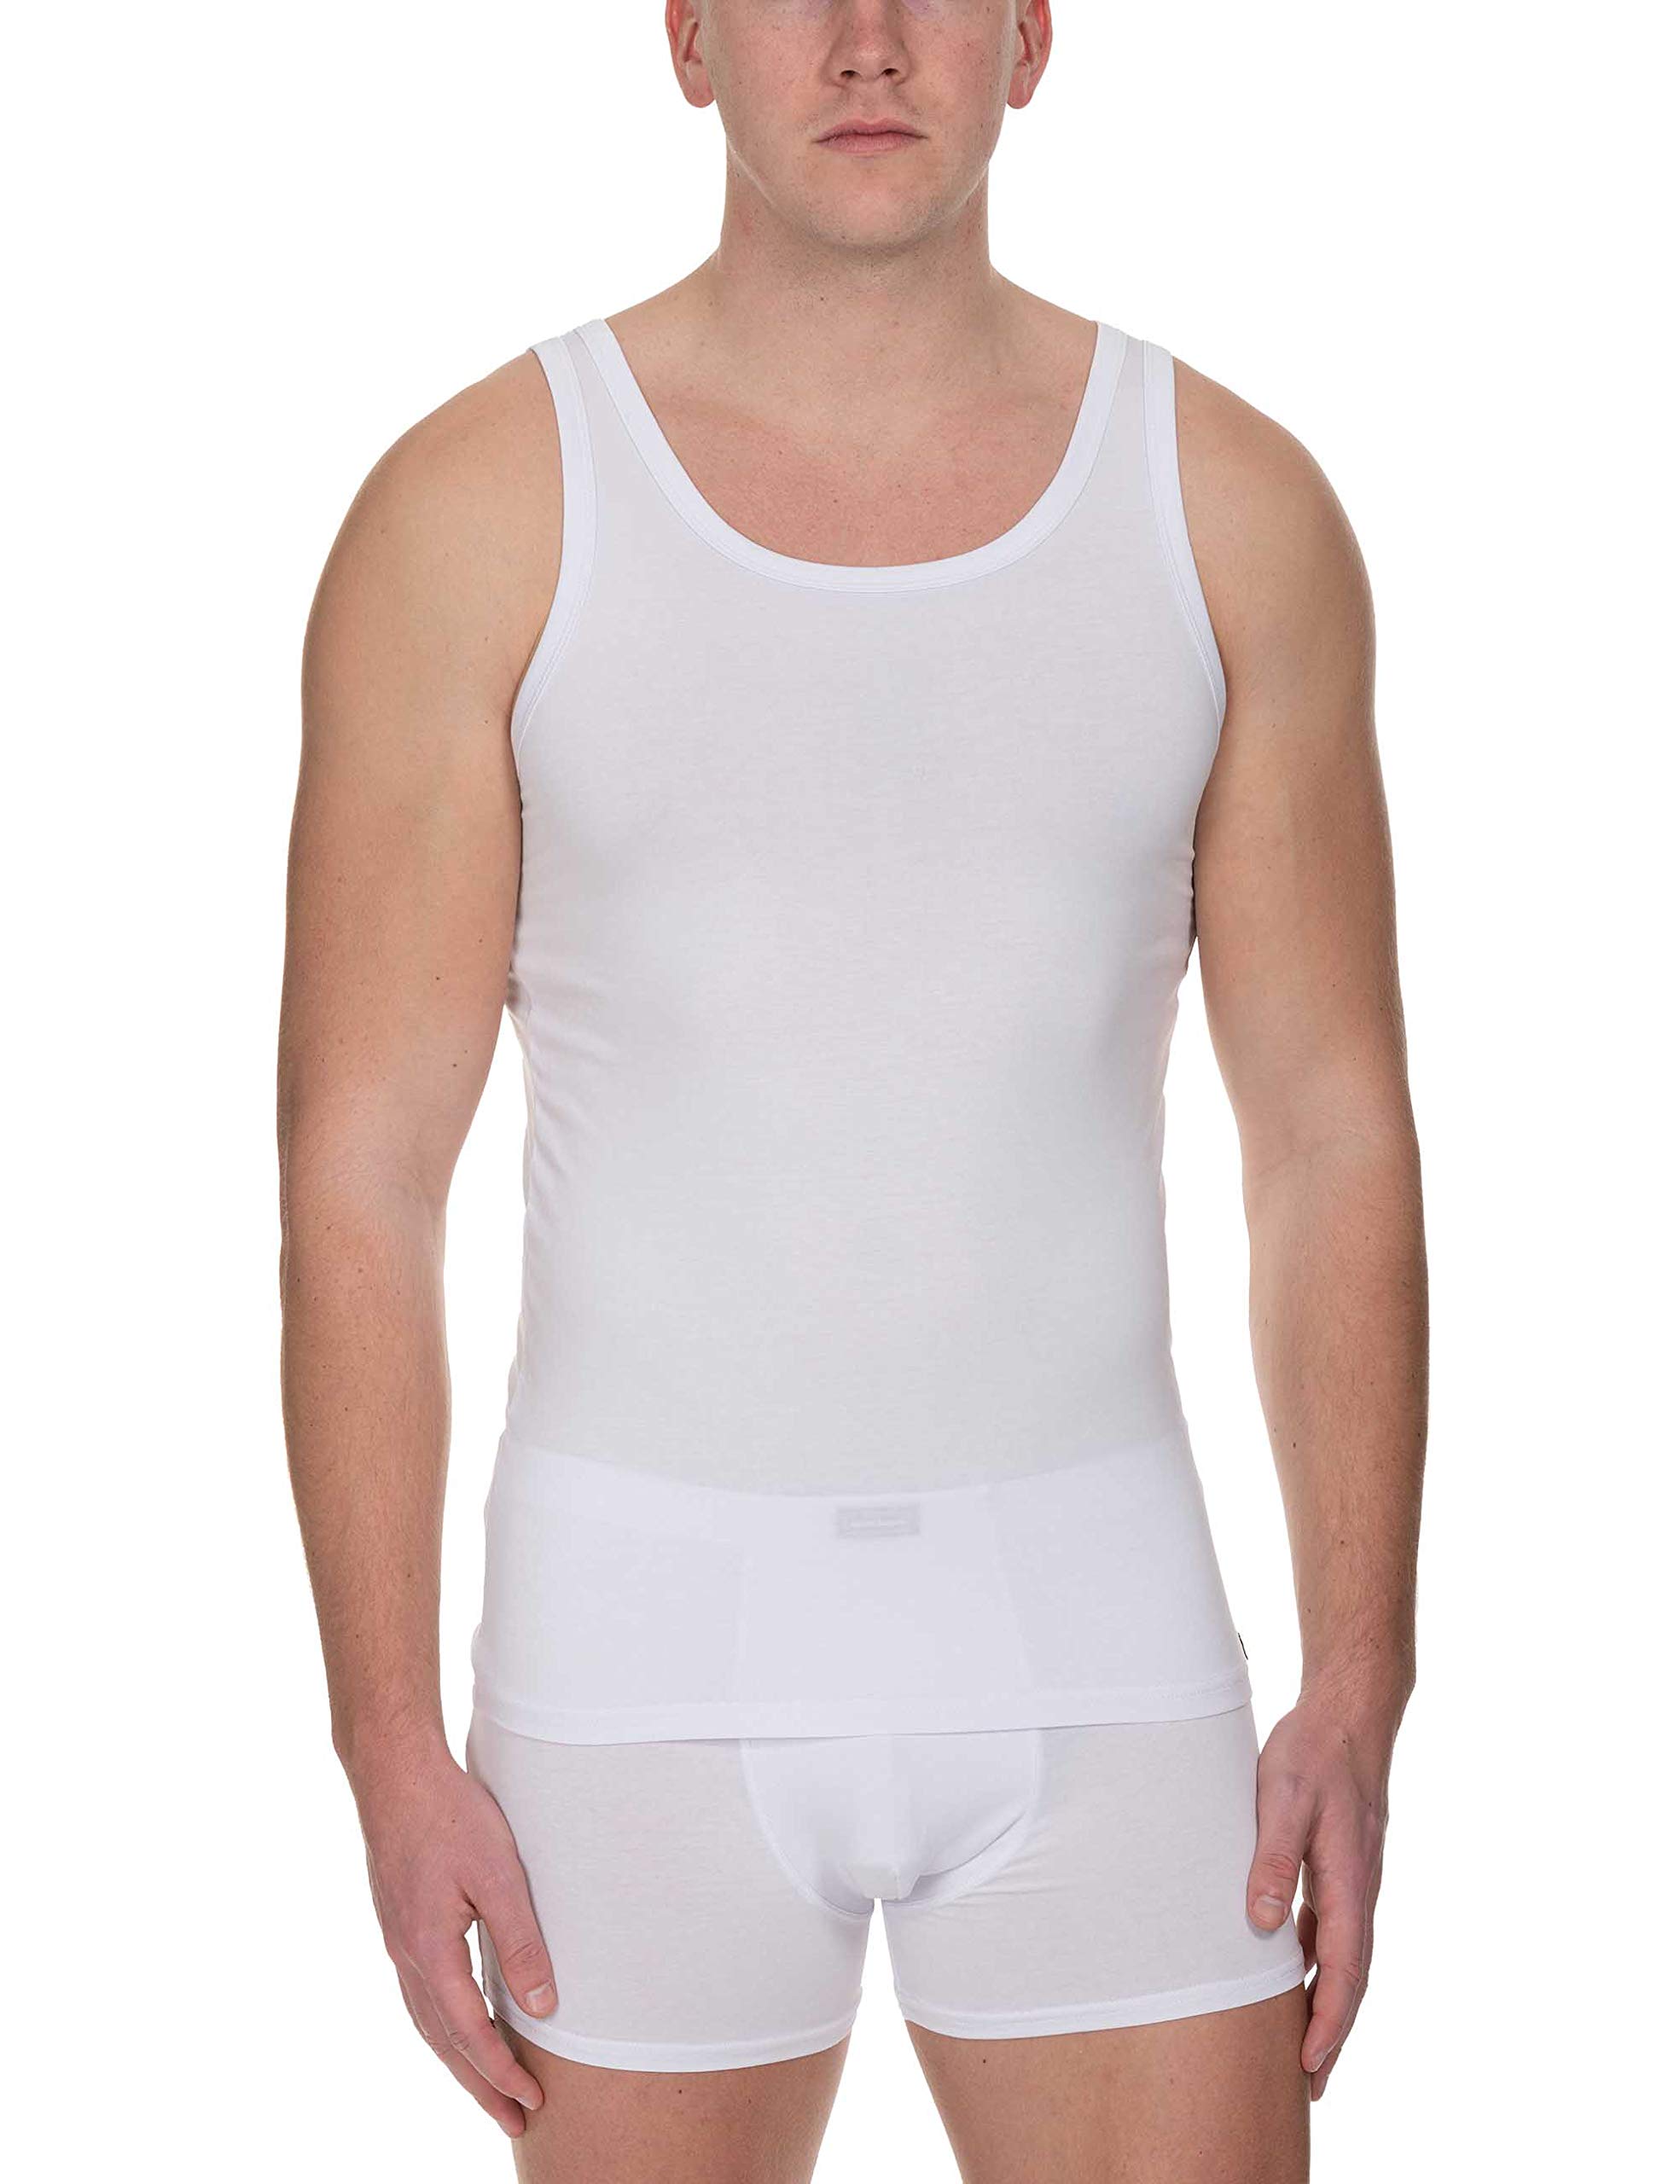 bruno banani Herren Sportshirt Infinity Unterhemd, Weiß (Weiß 001), X-Large (Herstellergröße: XL)